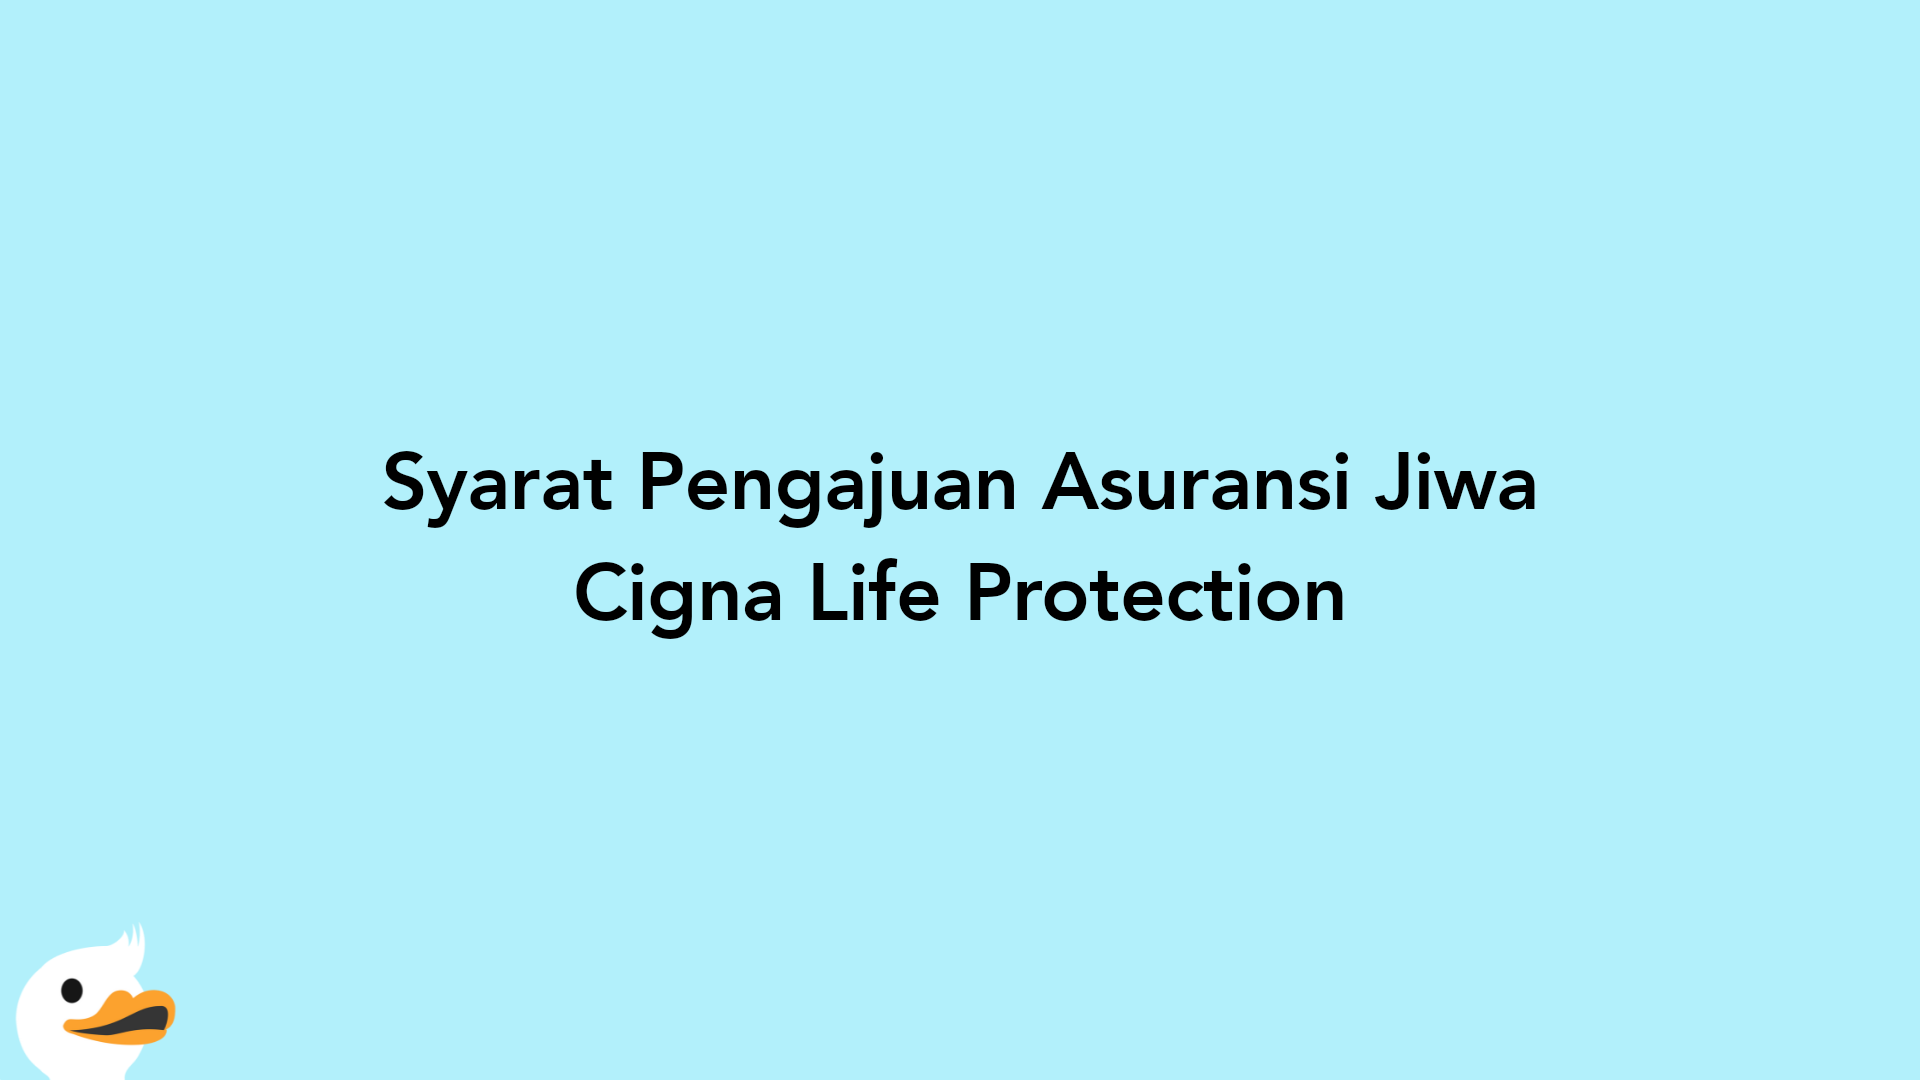 Syarat Pengajuan Asuransi Jiwa Cigna Life Protection